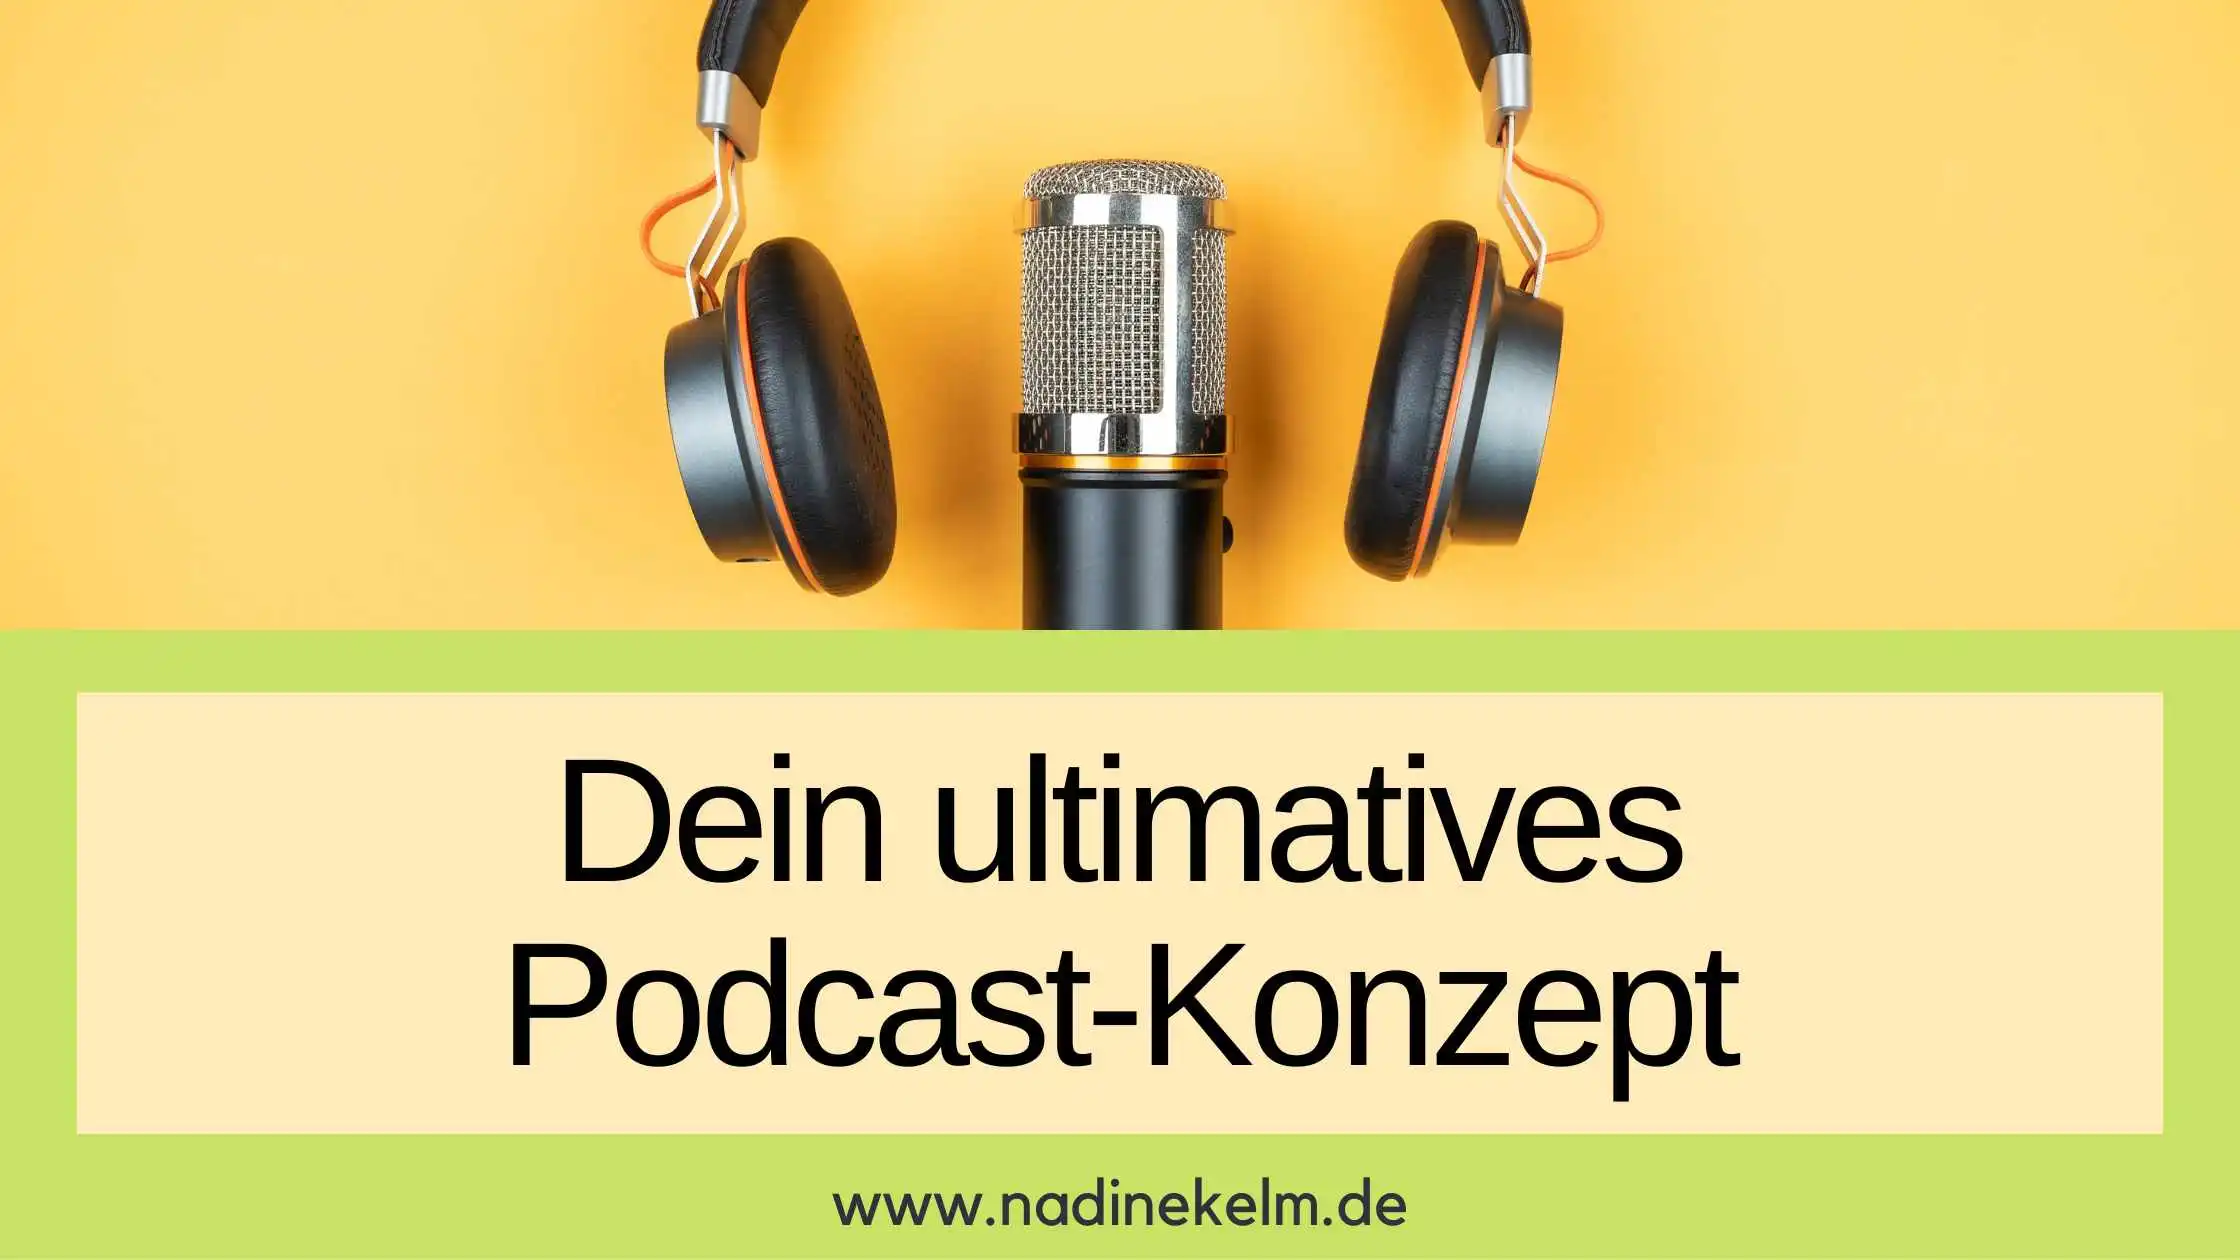 Mehr über den Artikel erfahren Dein ultimatives Podcast-Konzept für deinen erfolgreichen Podcast